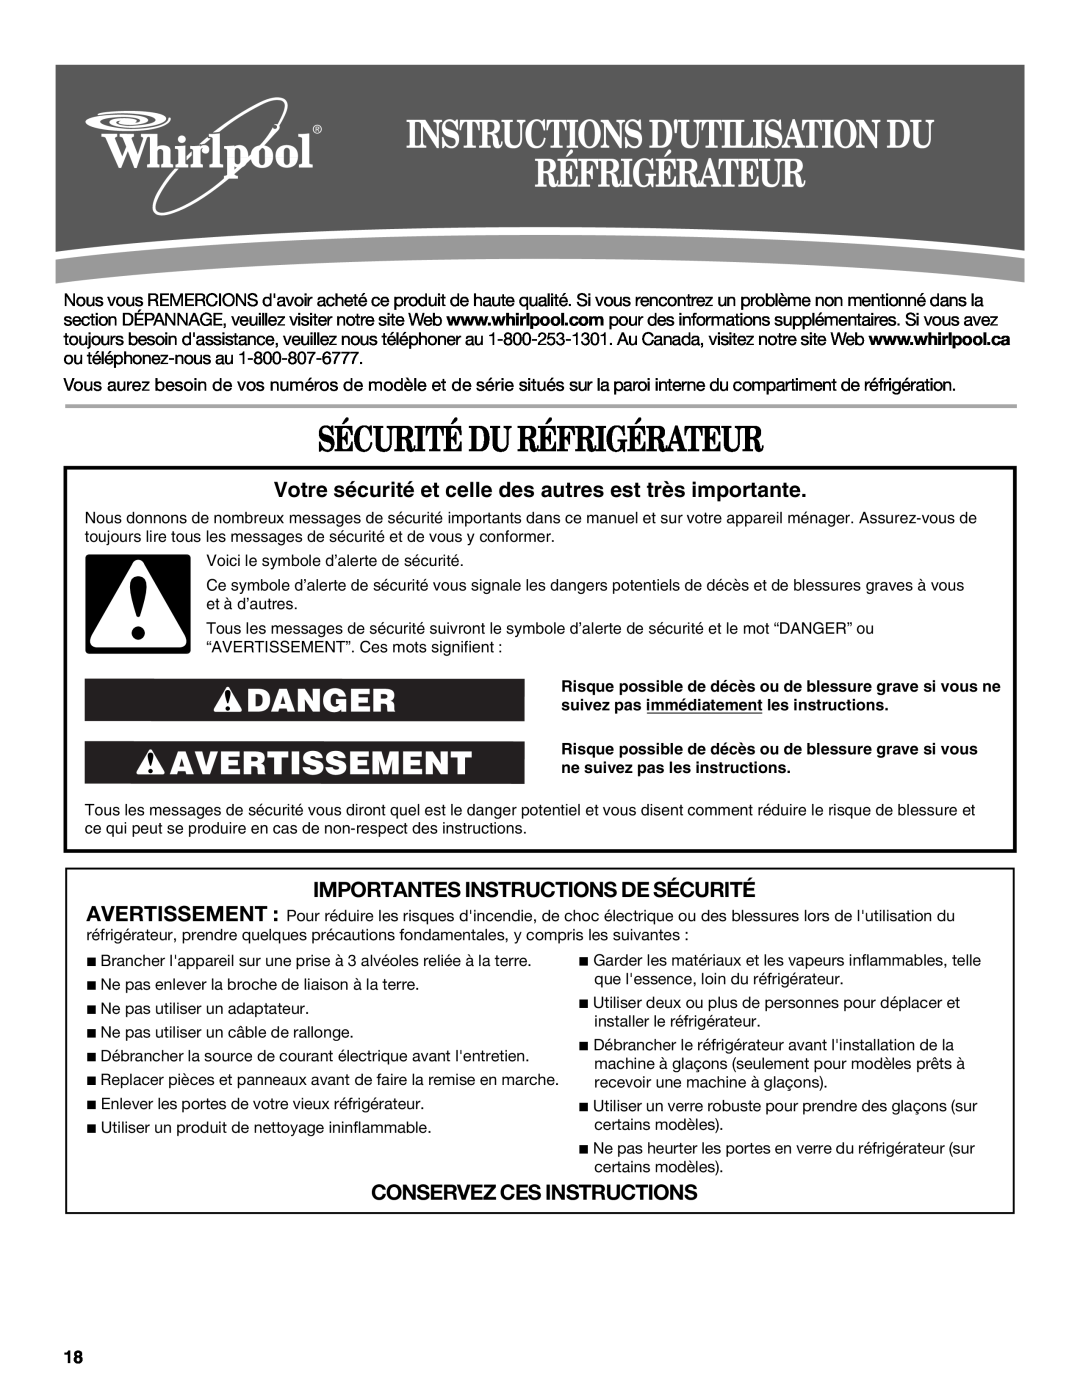 Whirlpool ED2VHEXVQ01, ED5GVEXVD02 Sécurité Du Réfrigérateur, Danger Avertissement, Importantes Instructions De Sécurité 